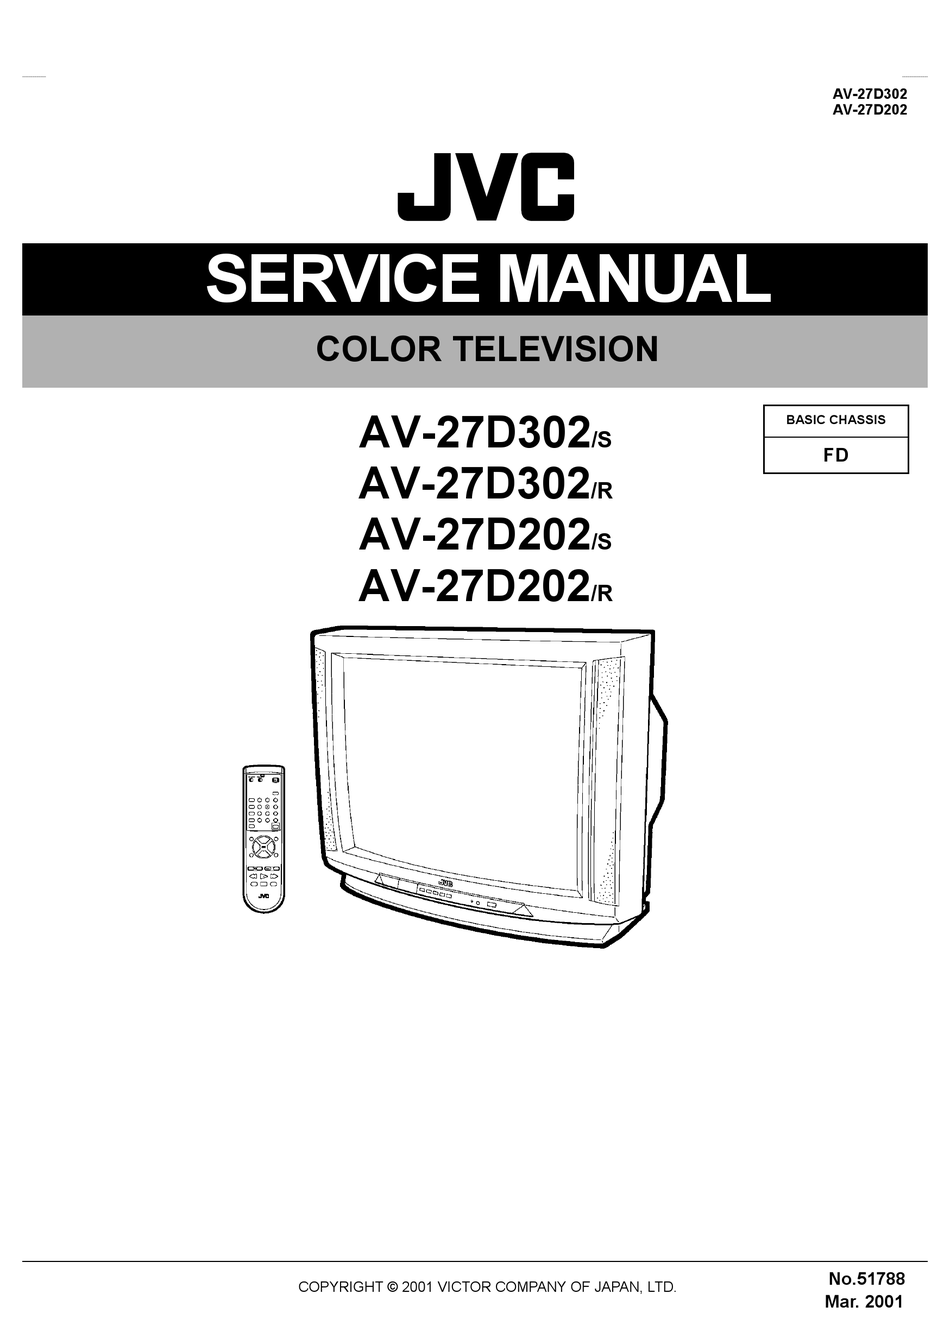 JVC XL-R2010BK SERVICE MANUAL Pdf Download | ManualsLib